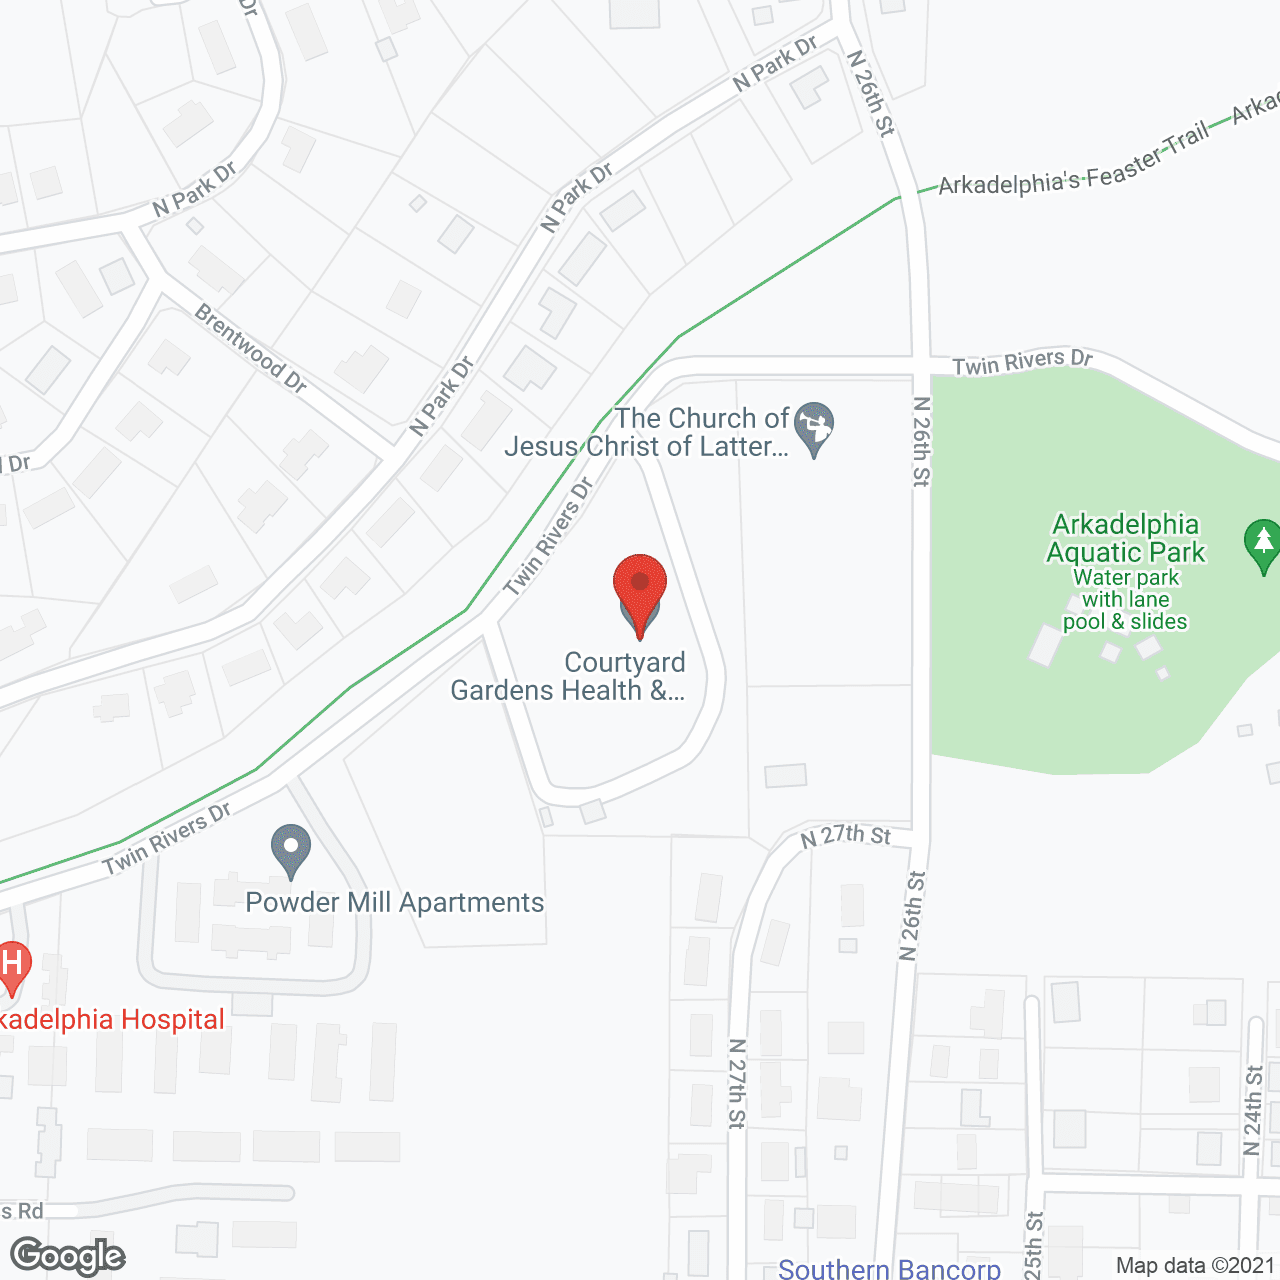 Golden LivingCenter - Arkadelphia in google map